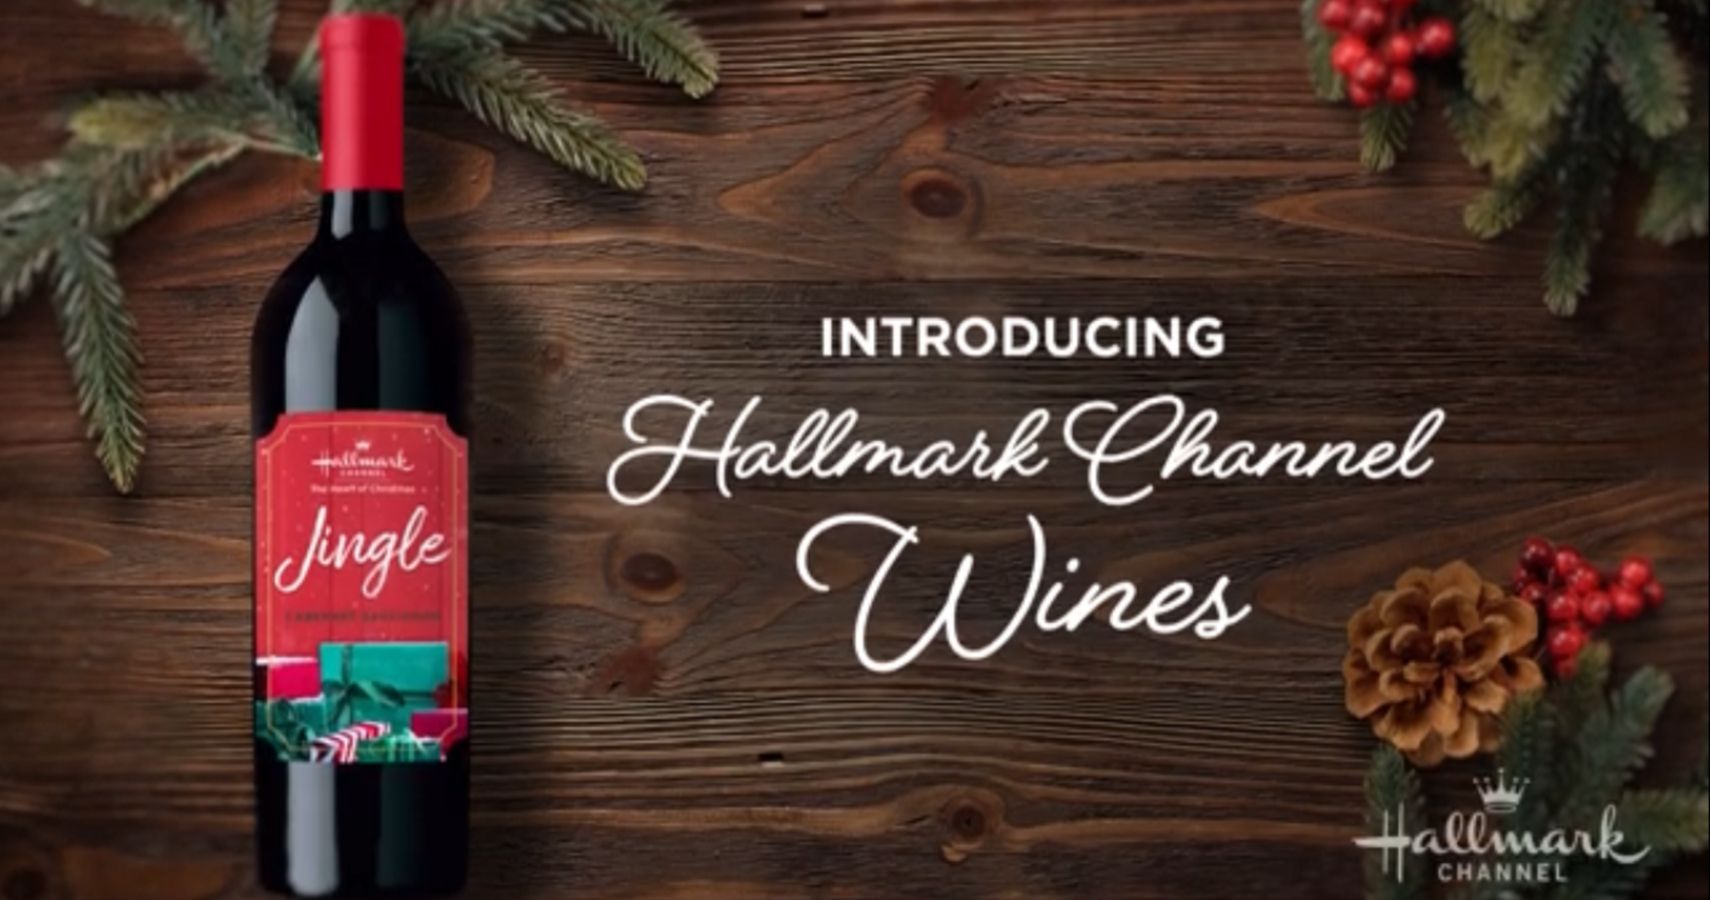 Hallmark Channel Wine Launch